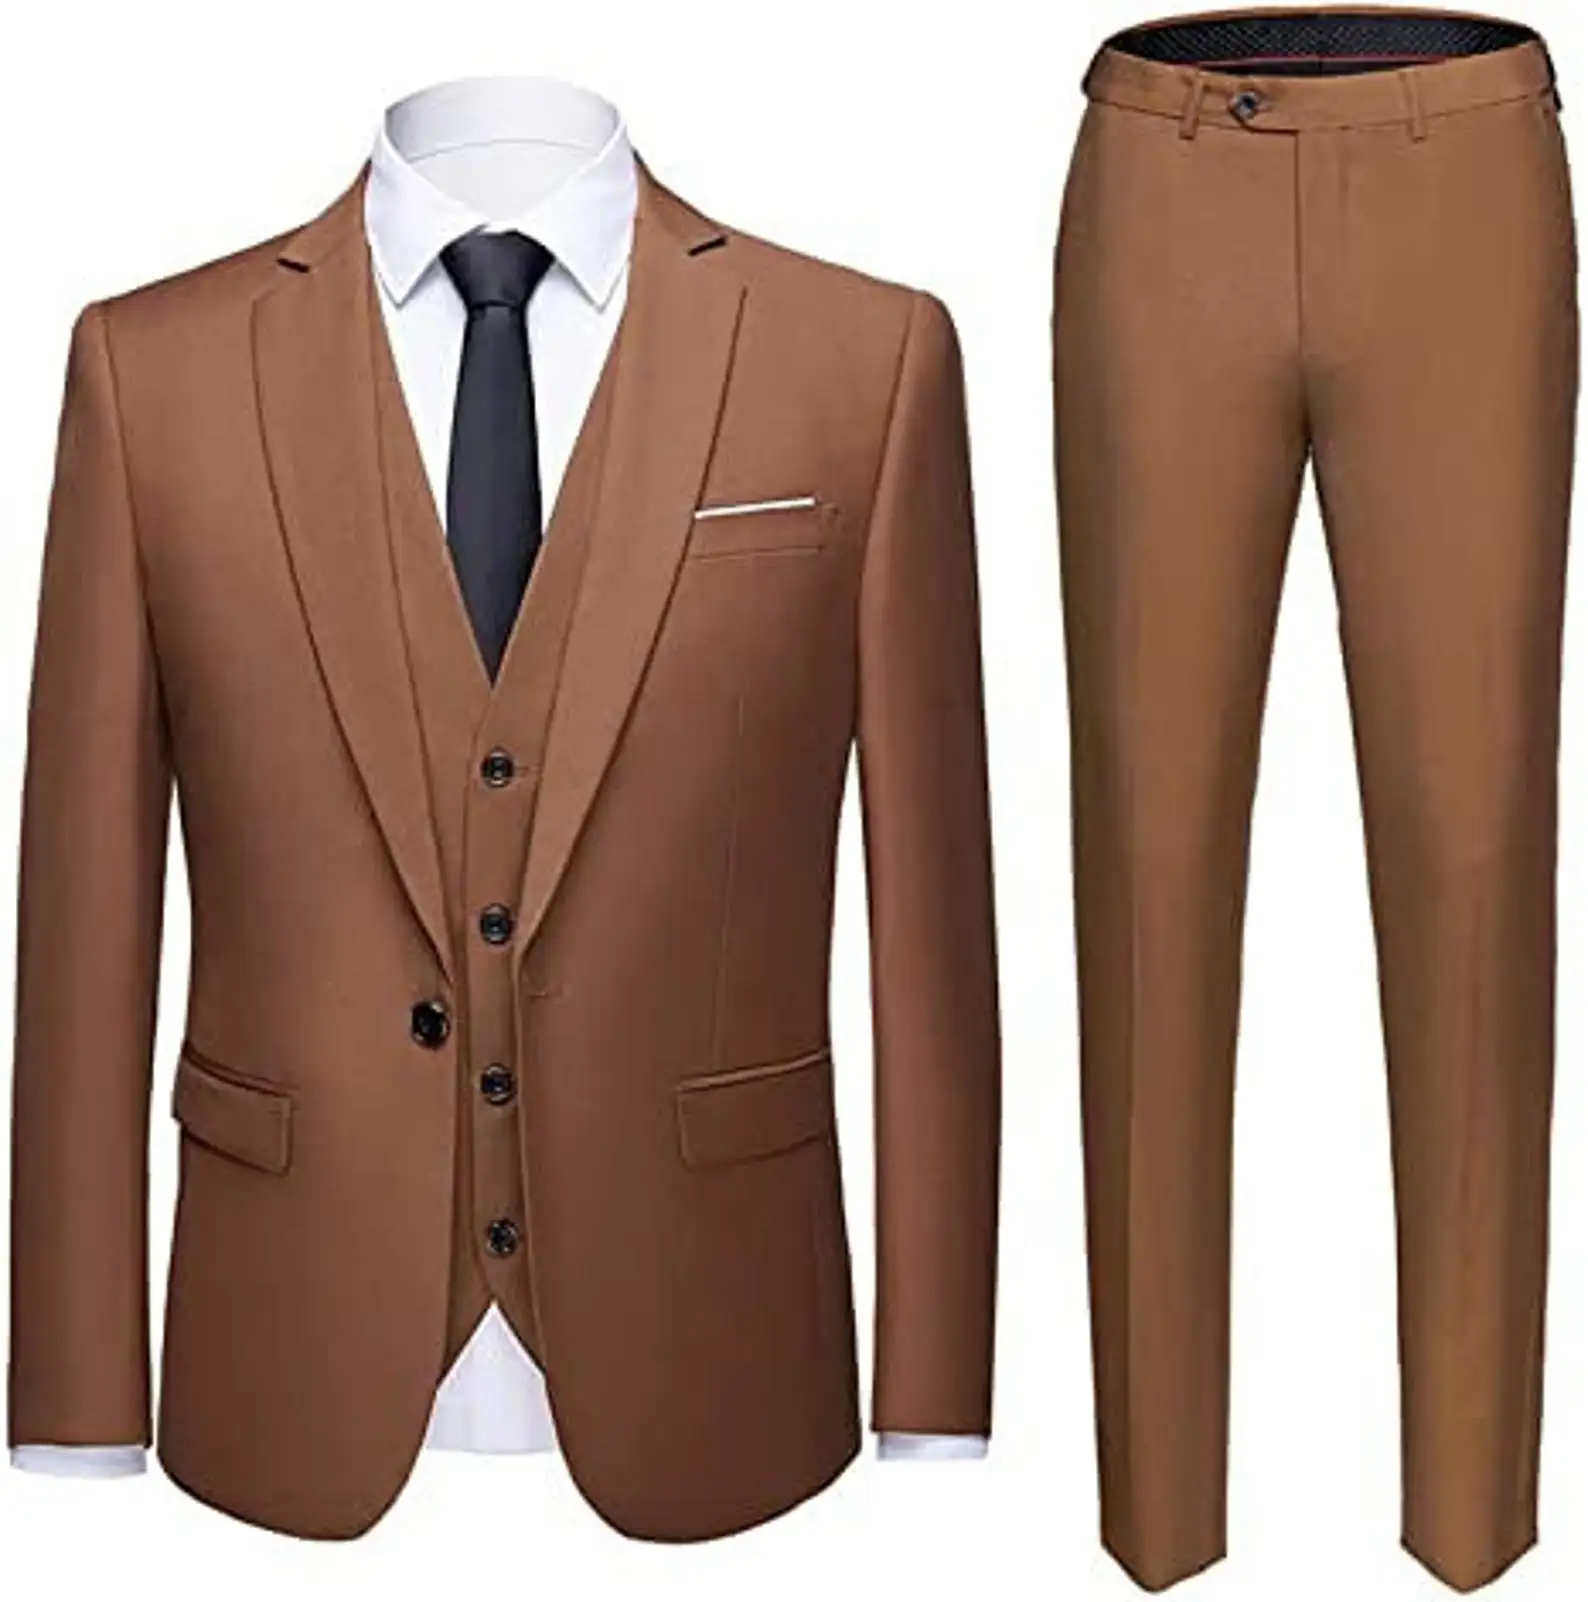 Men Suits Notched Lapel Business Slim Fit Wedding Groom Tuxedo 3 Pieces Set Terno Masculino Jacket+Vest+Pants Trajes De Hombre